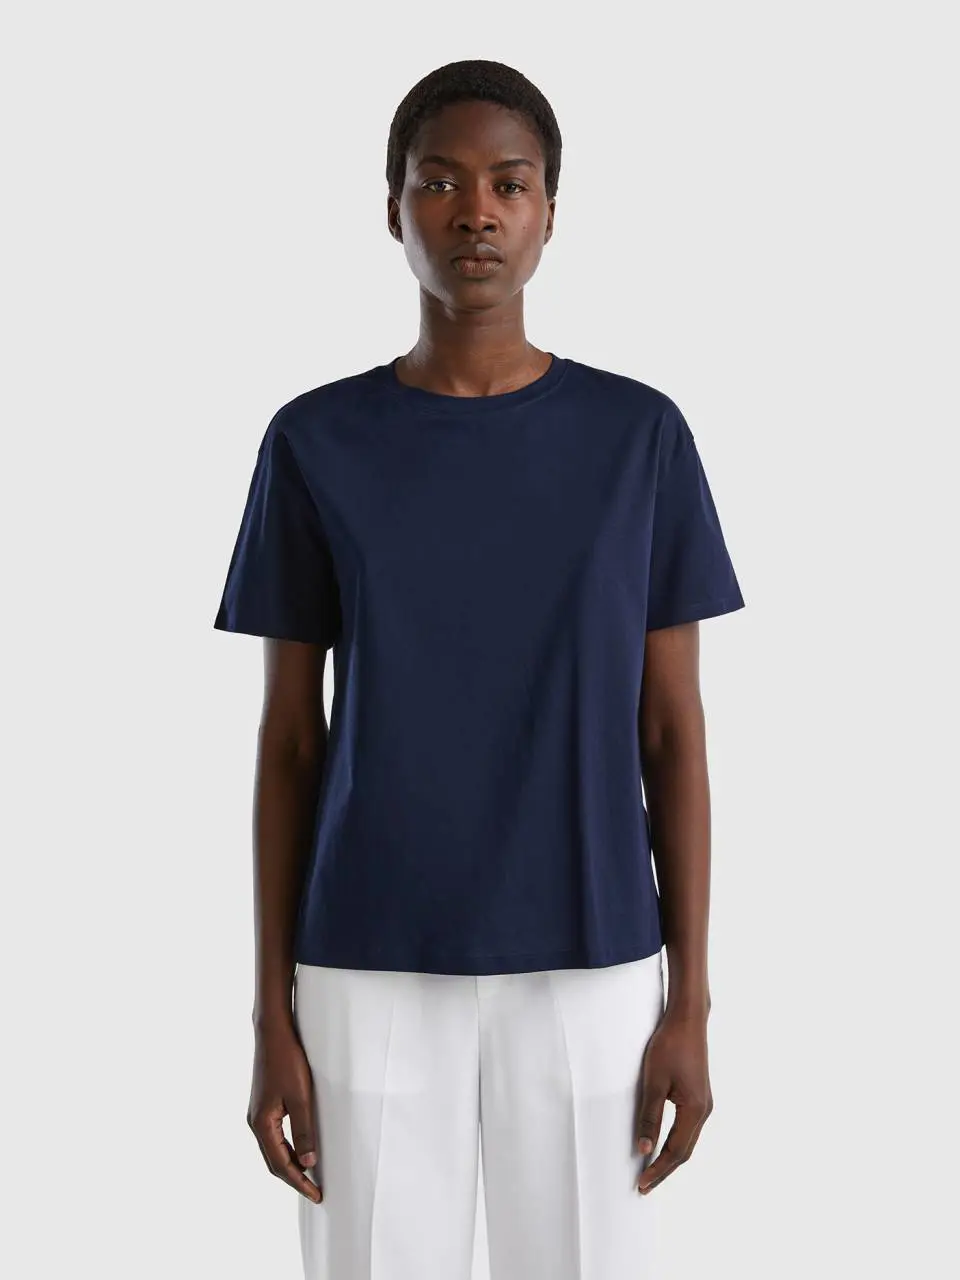 Benetton short sleeve 100% cotton t-shirt. 1